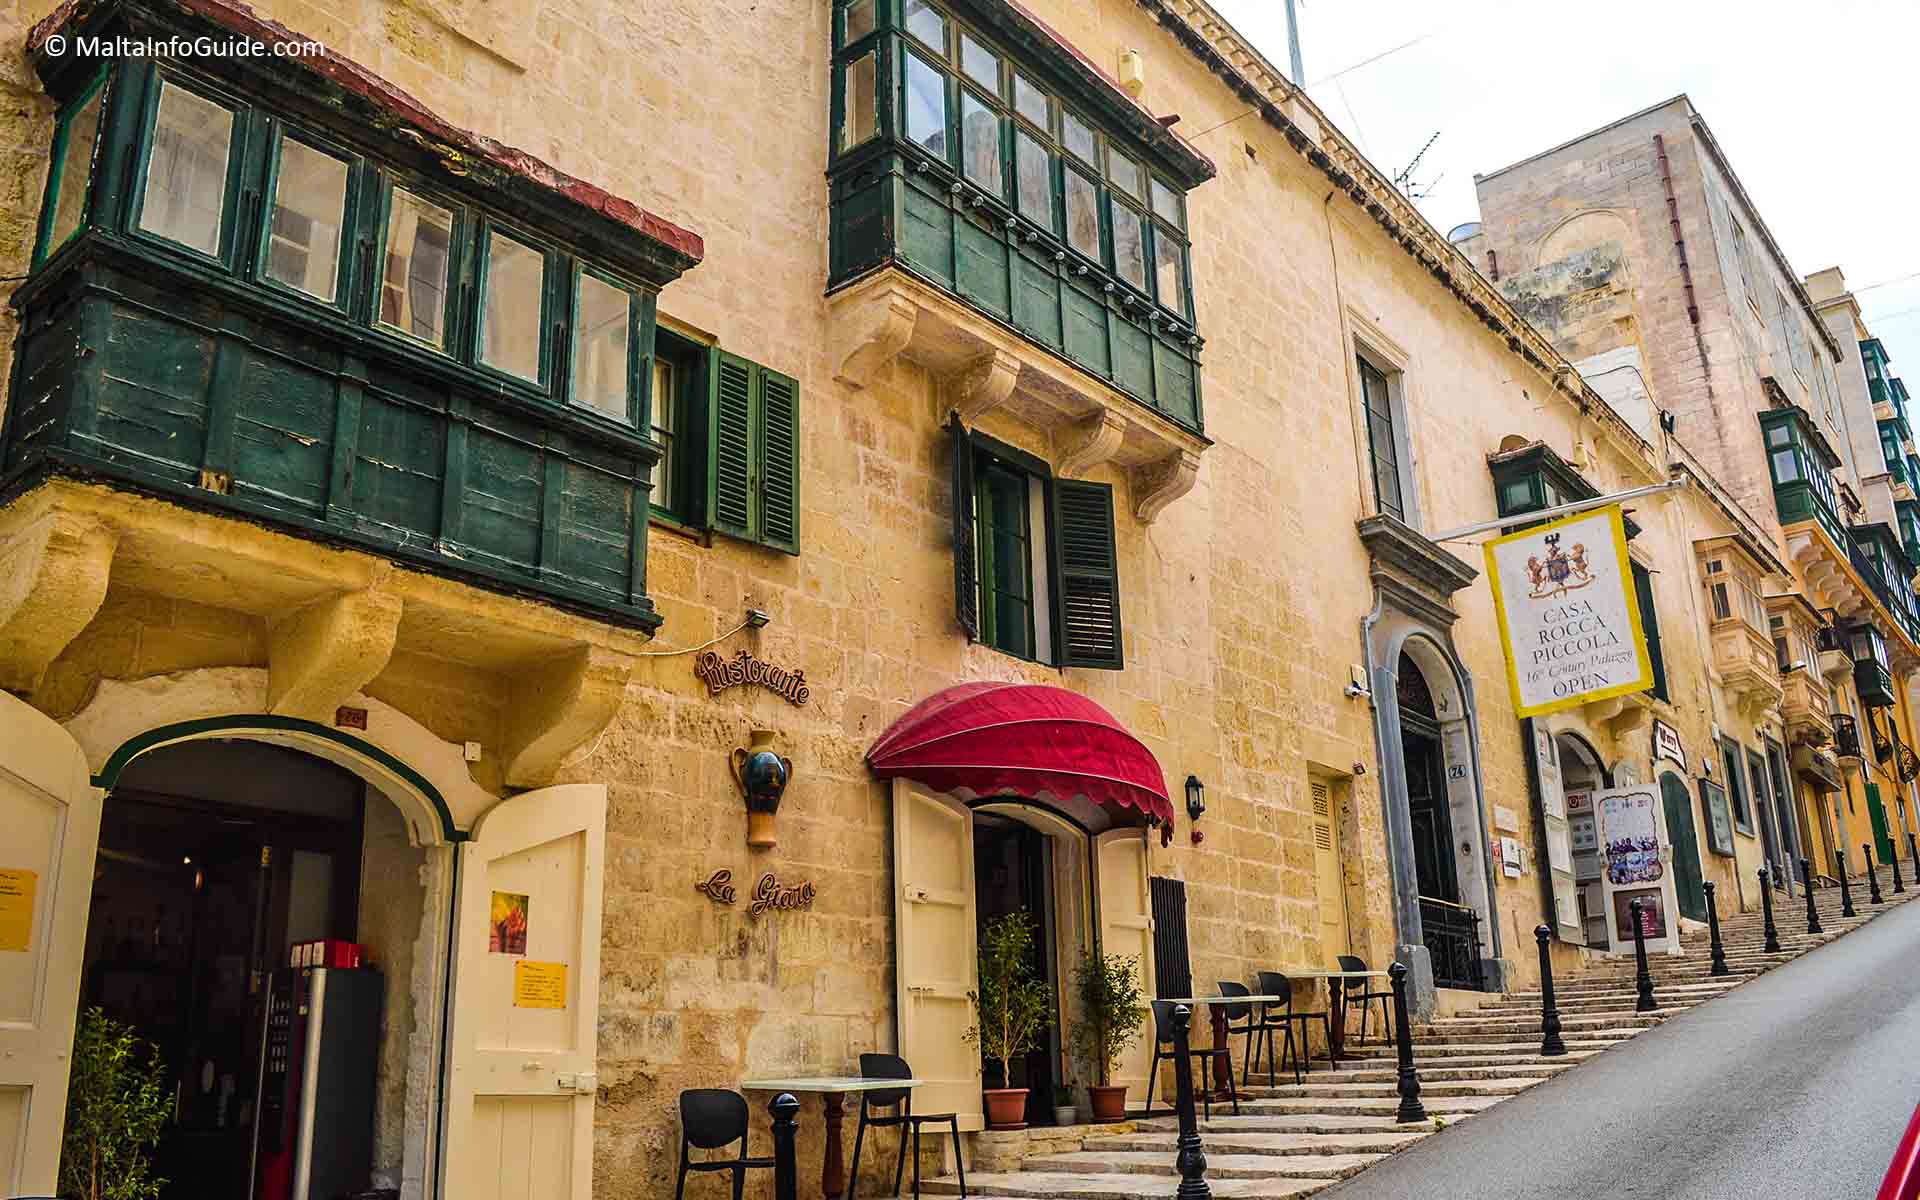 Casa Rocca Piccola facade along Republic Street Valletta.